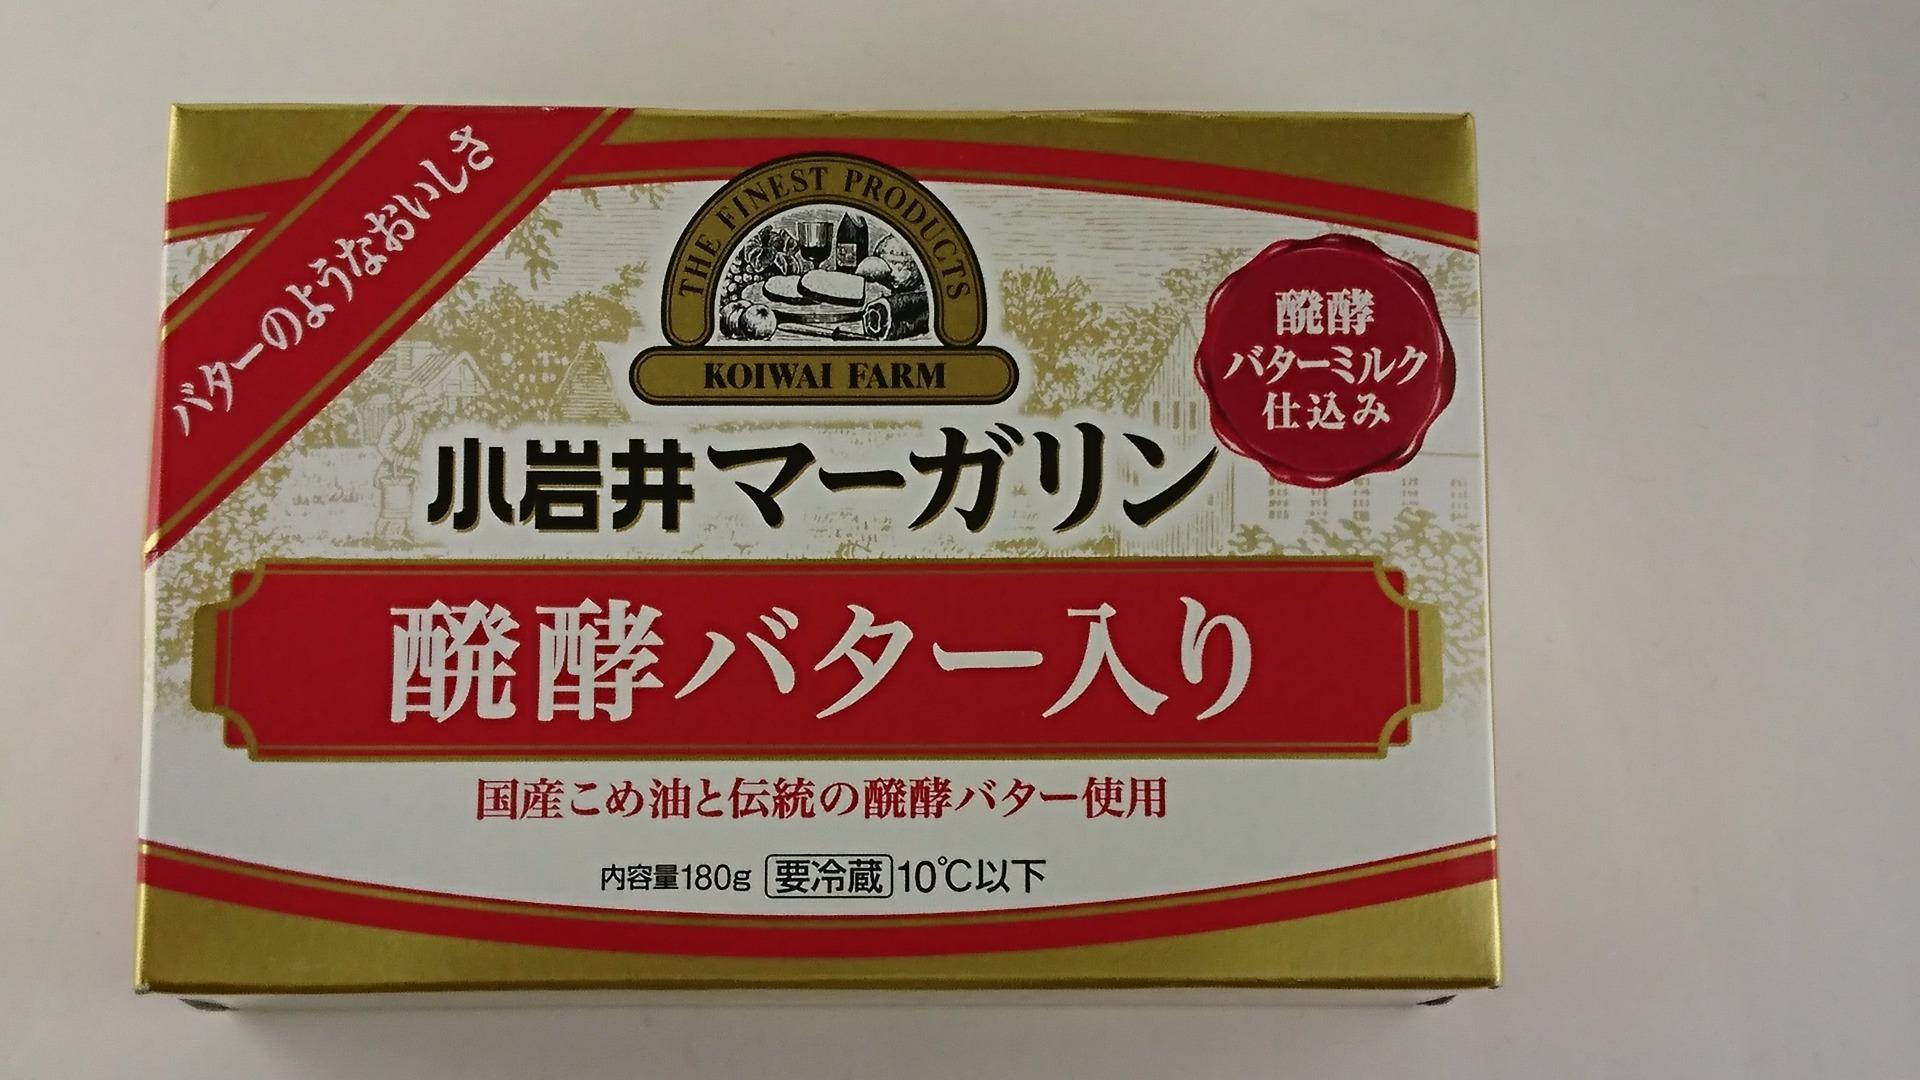 小岩井マーガリン 醗酵バター入り : Ultimate Catalog